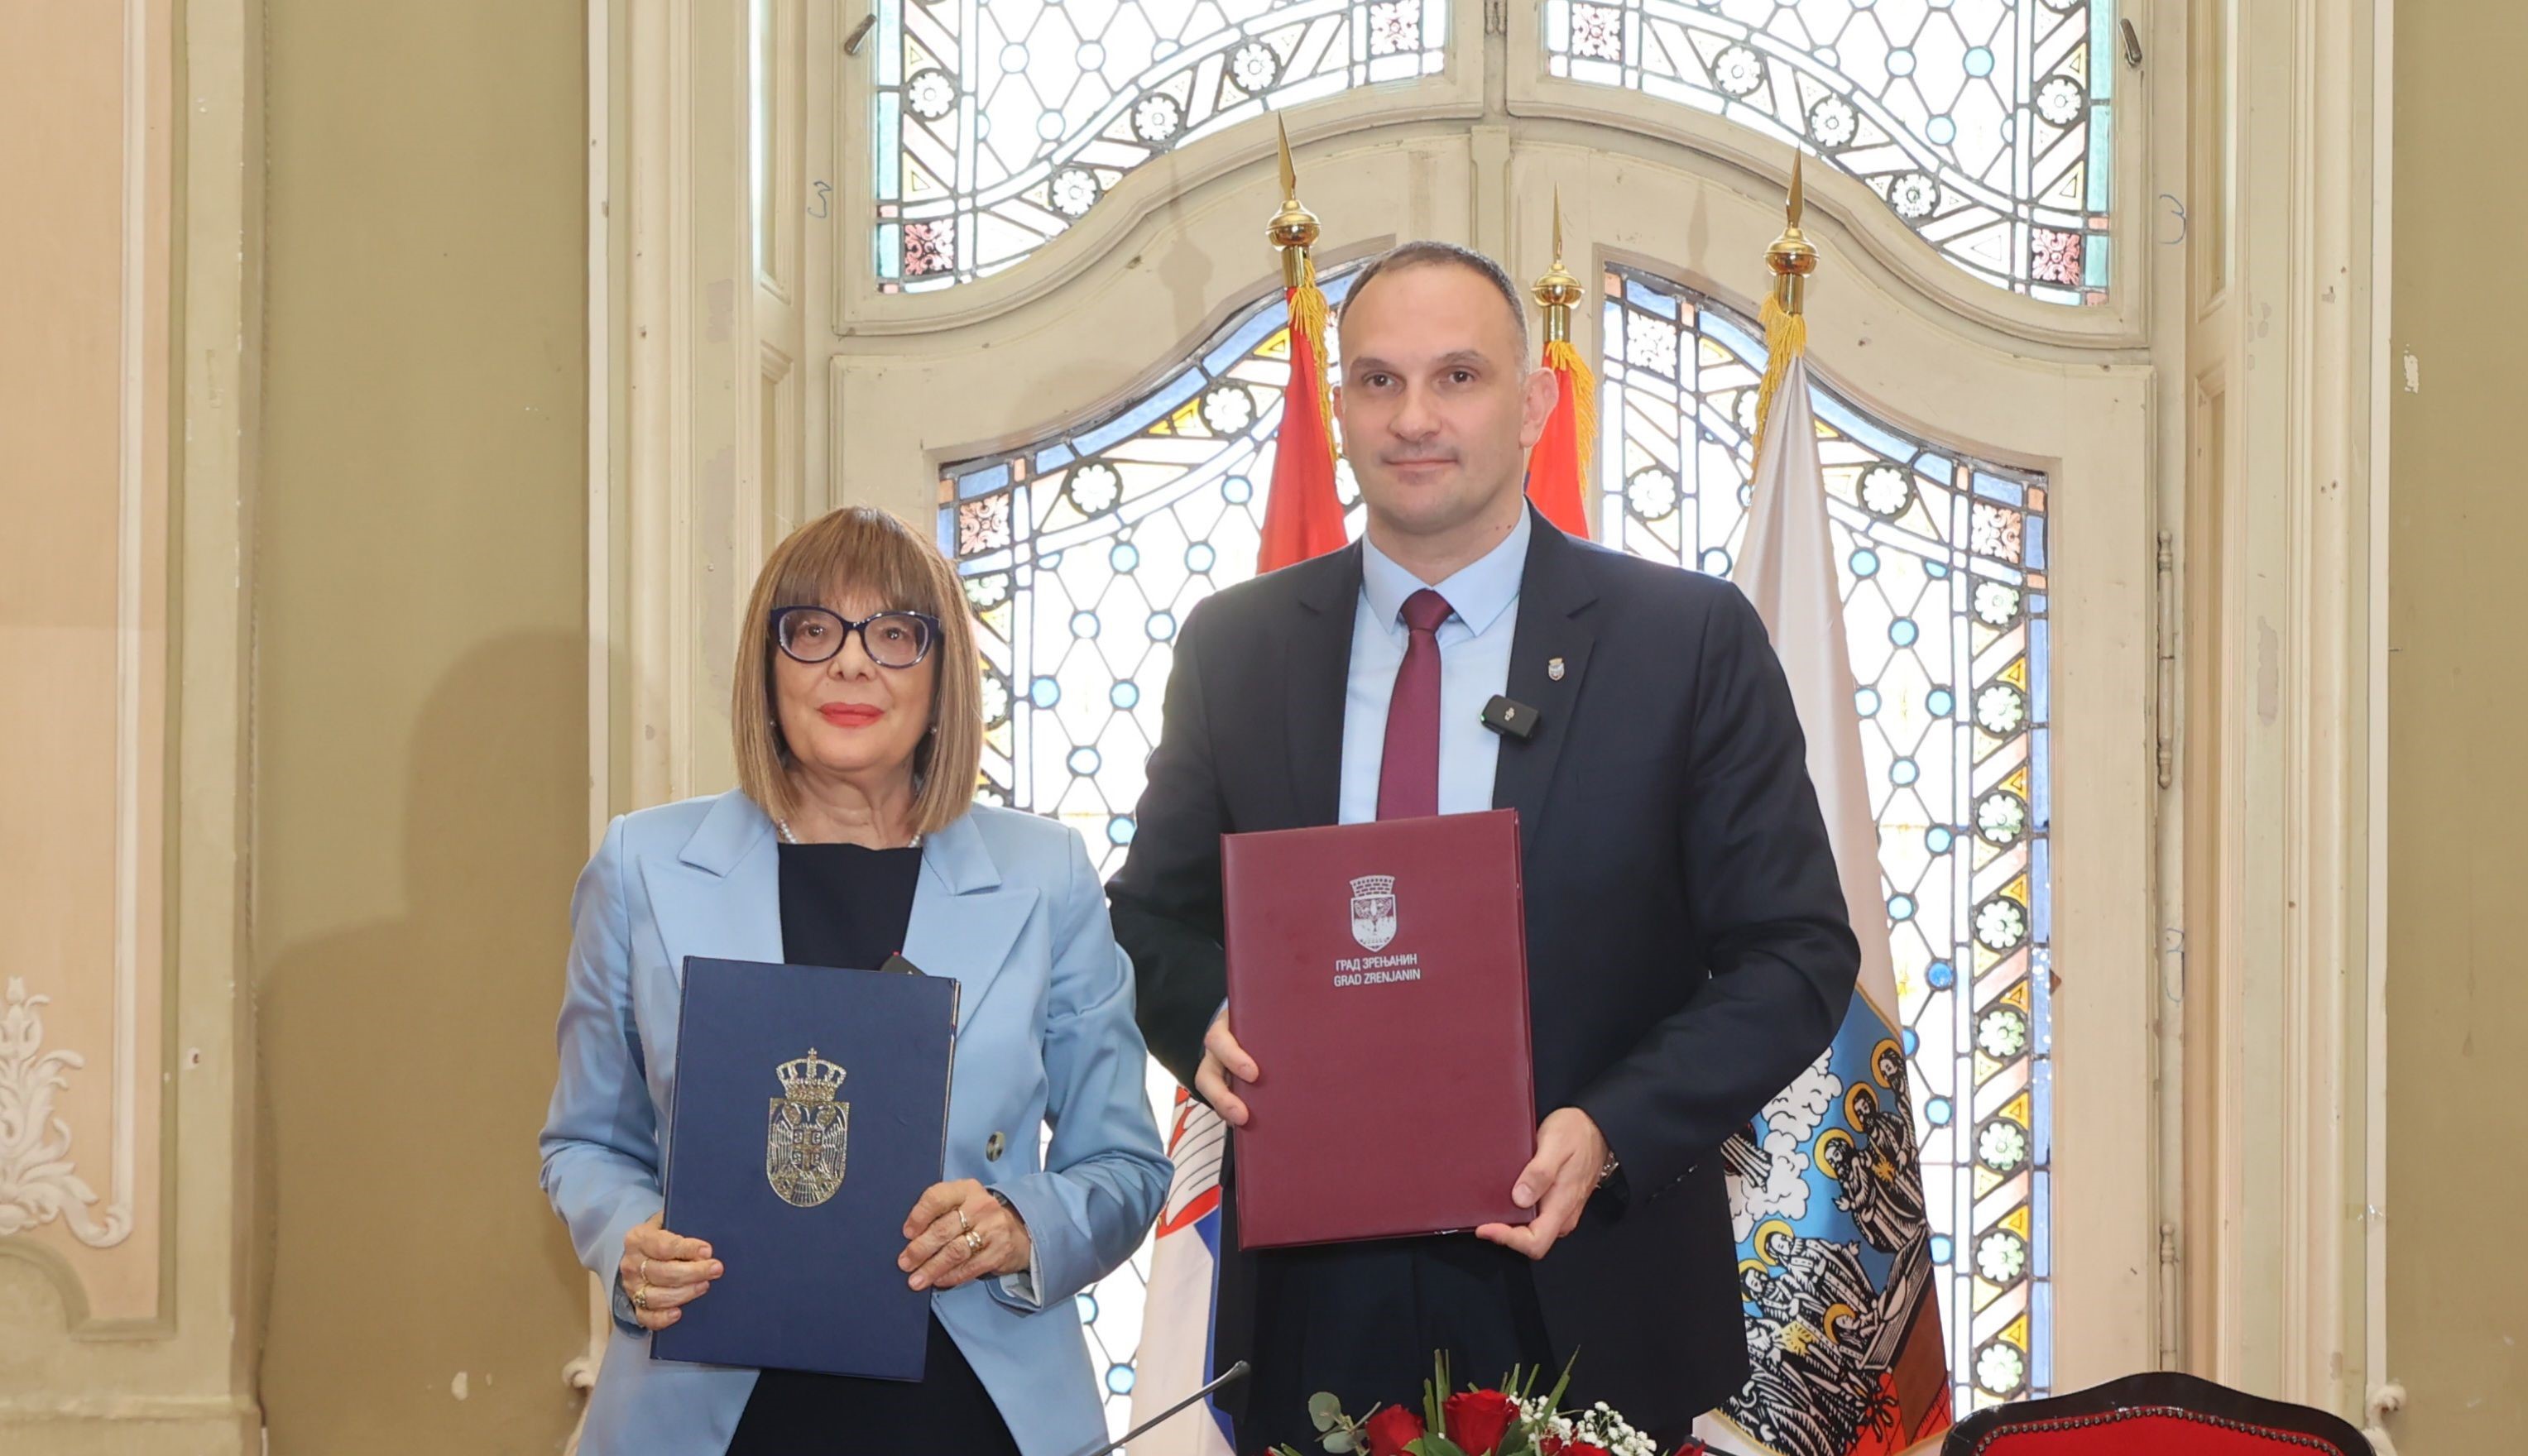 Potpisan Ugovor za ppojekat Zrenjanin – Prestonica kulture Srbije 2025. godine